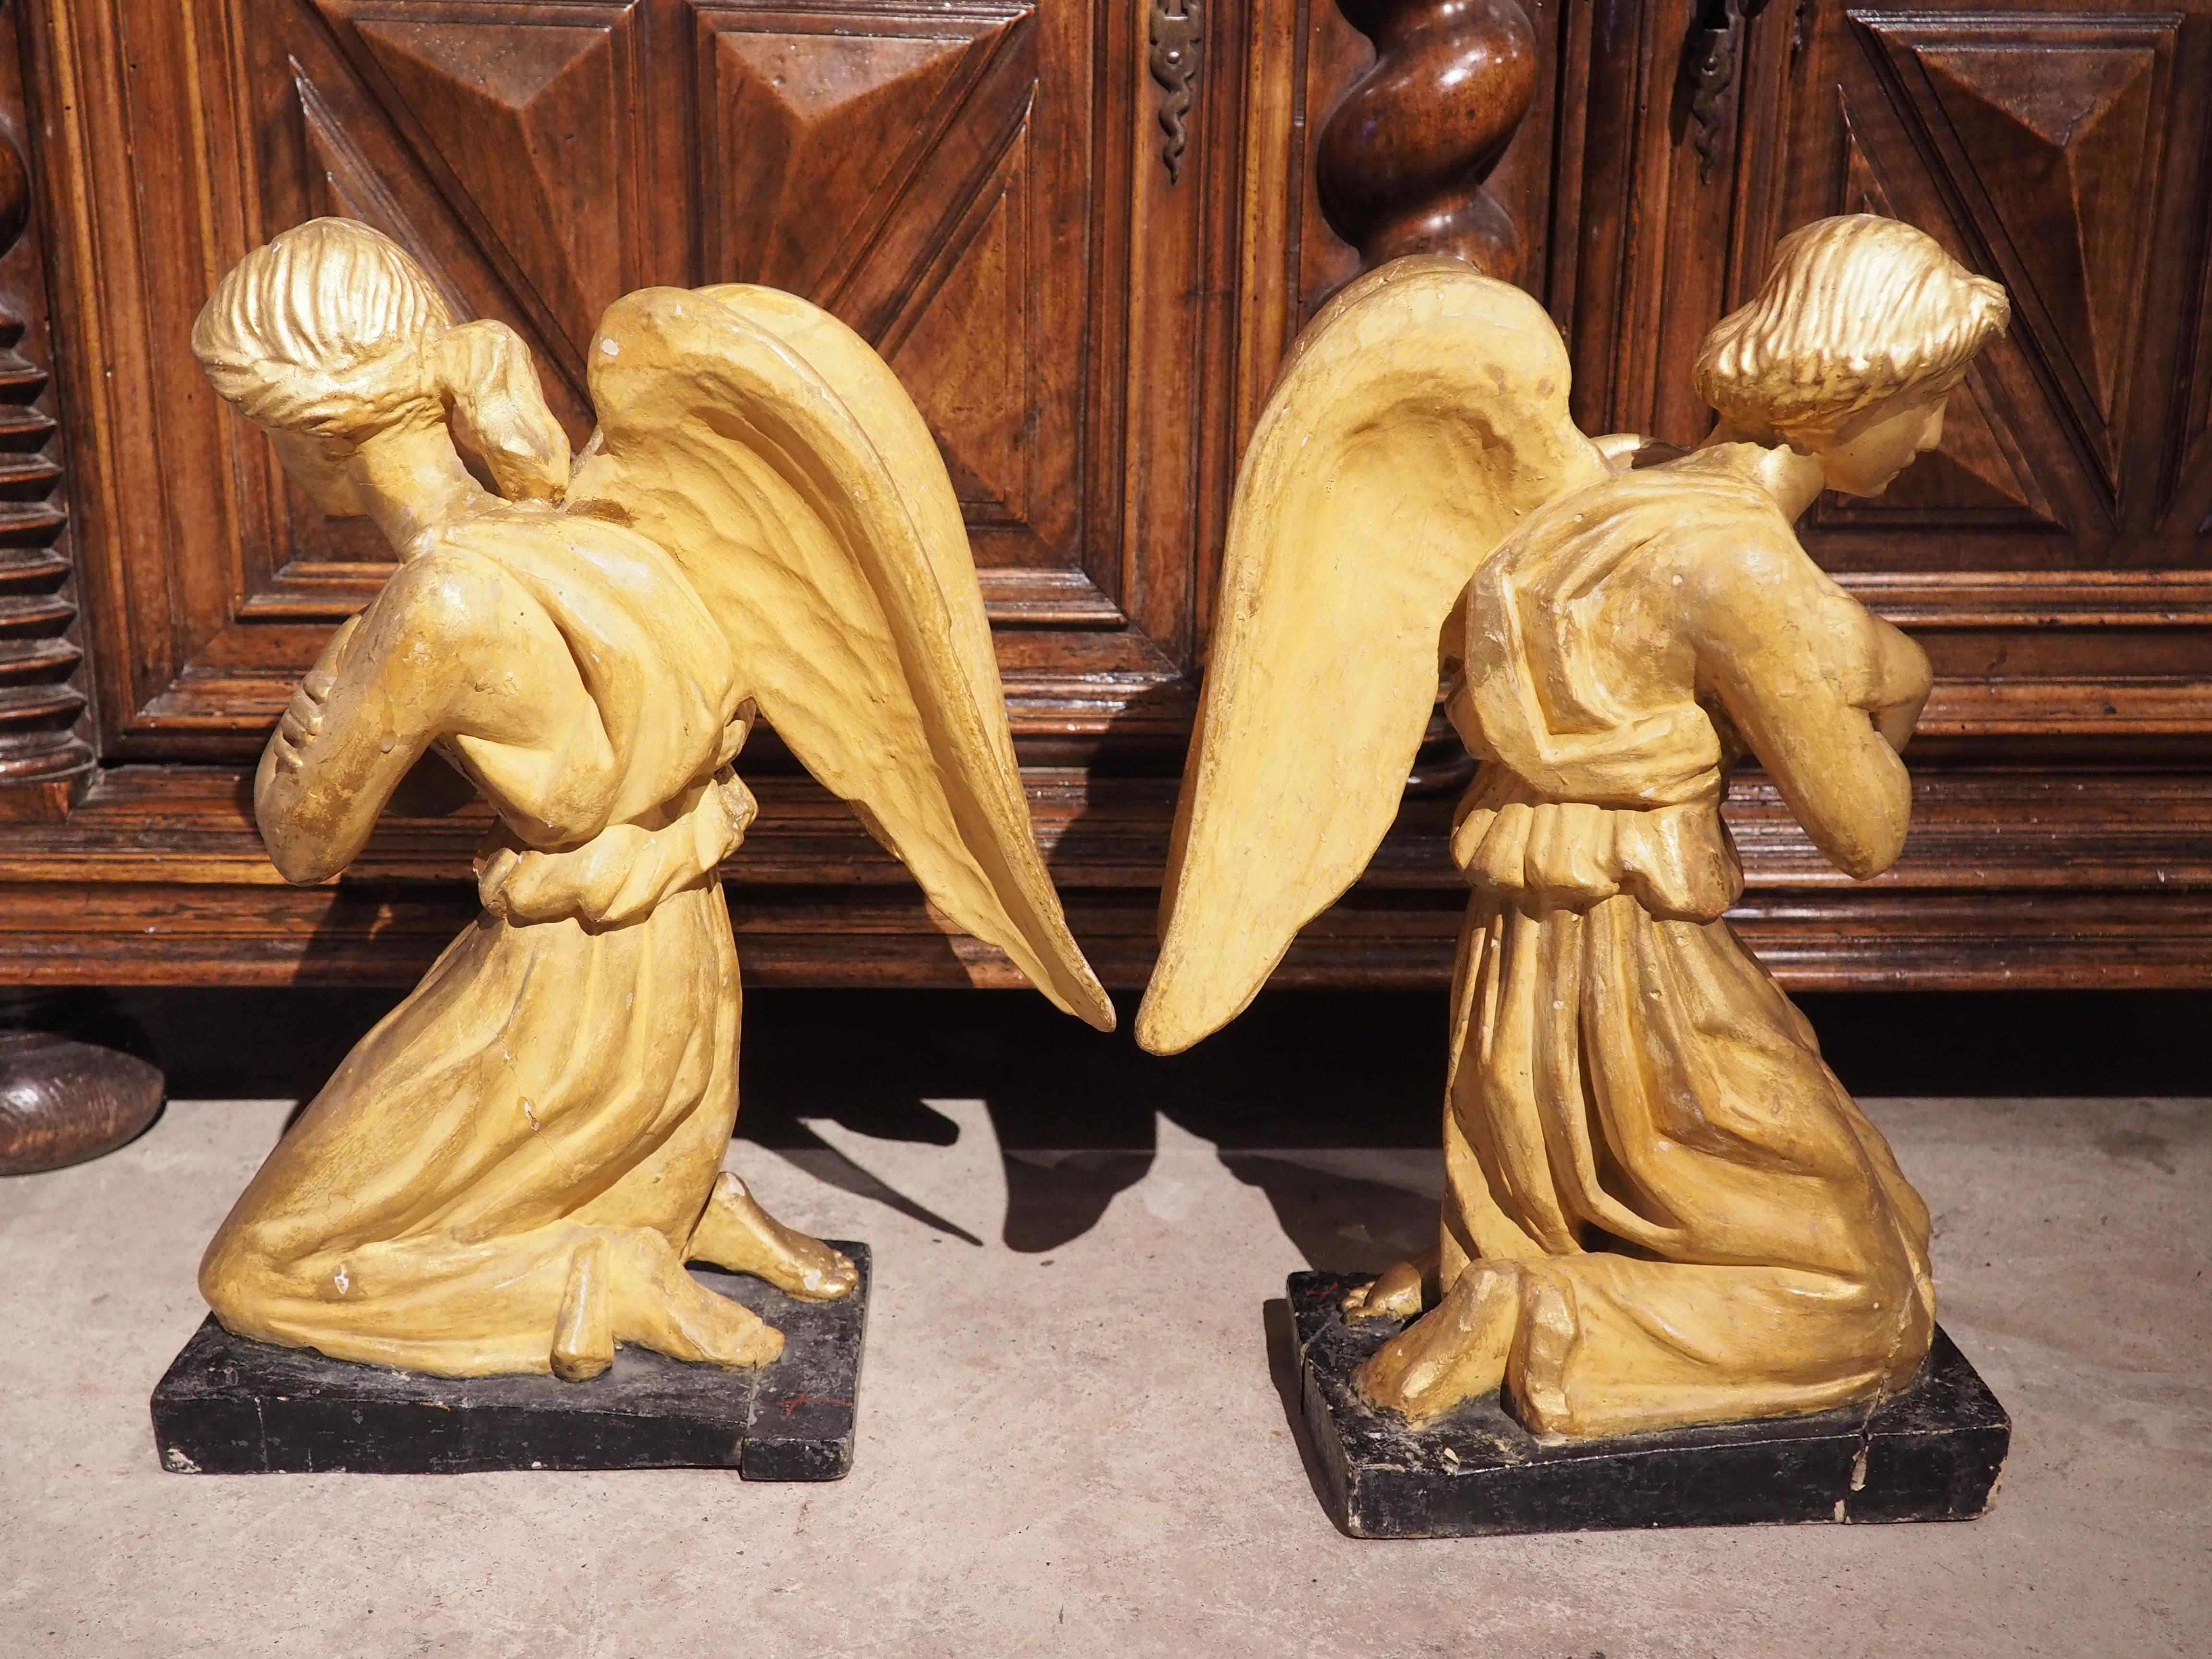 Sculptée à la main en Italie vers 1800, cette paire d'anges en bois doré est représentée dans une double position de génuflexion ou d'agenouillement. Les deux anges sont entièrement dorés, avec des ailes ajoutées et un long chiton fluide rassemblé